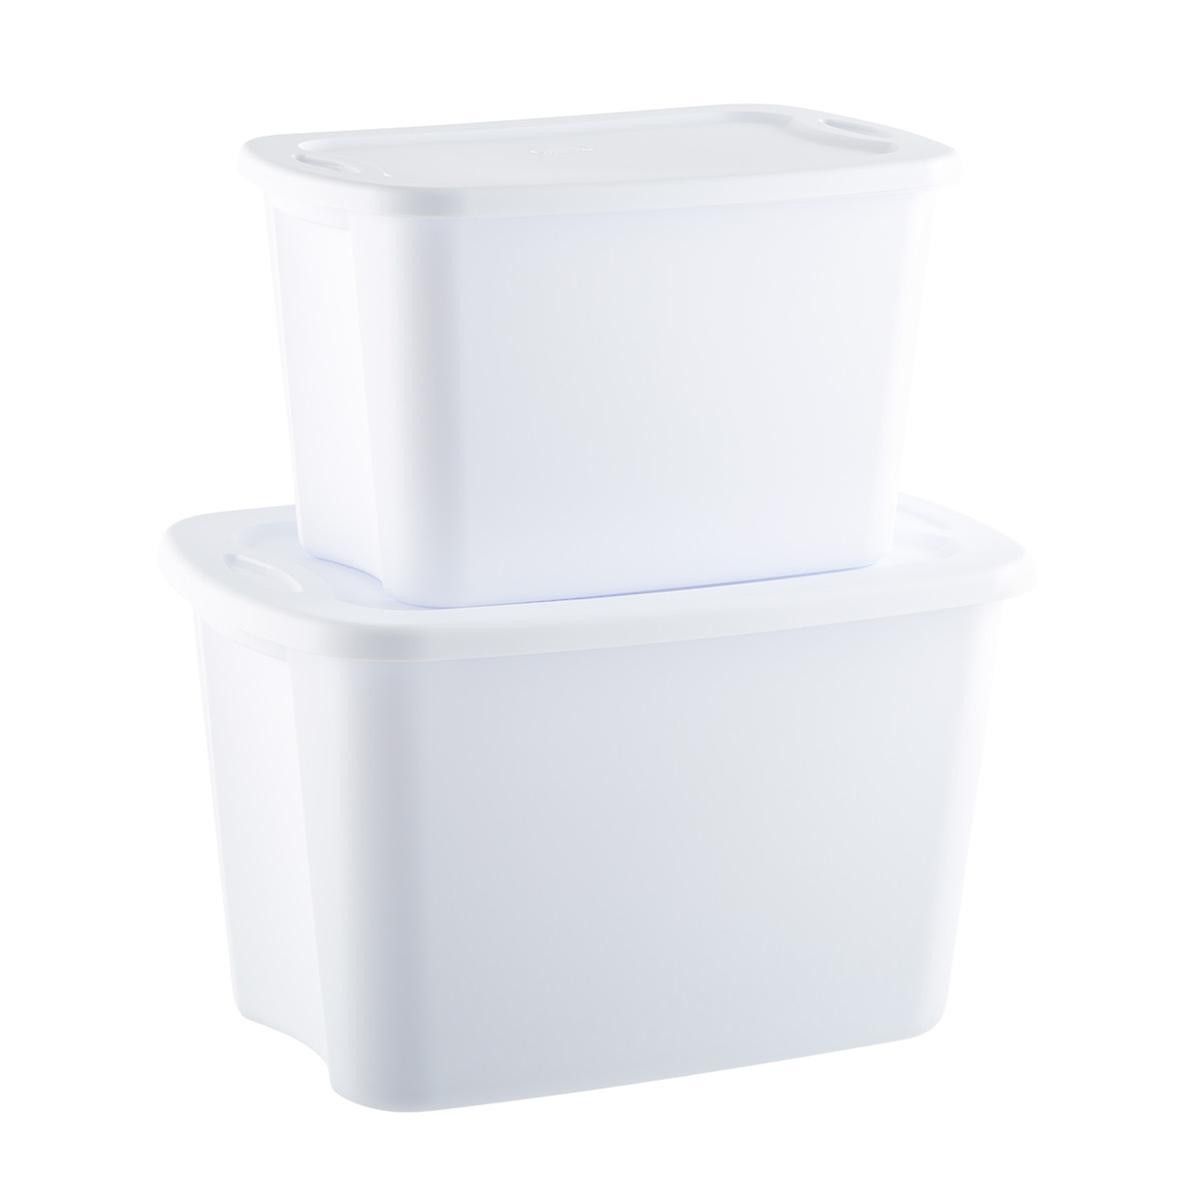 Sterilite 18 Gal. Tote Box White | The Container Store